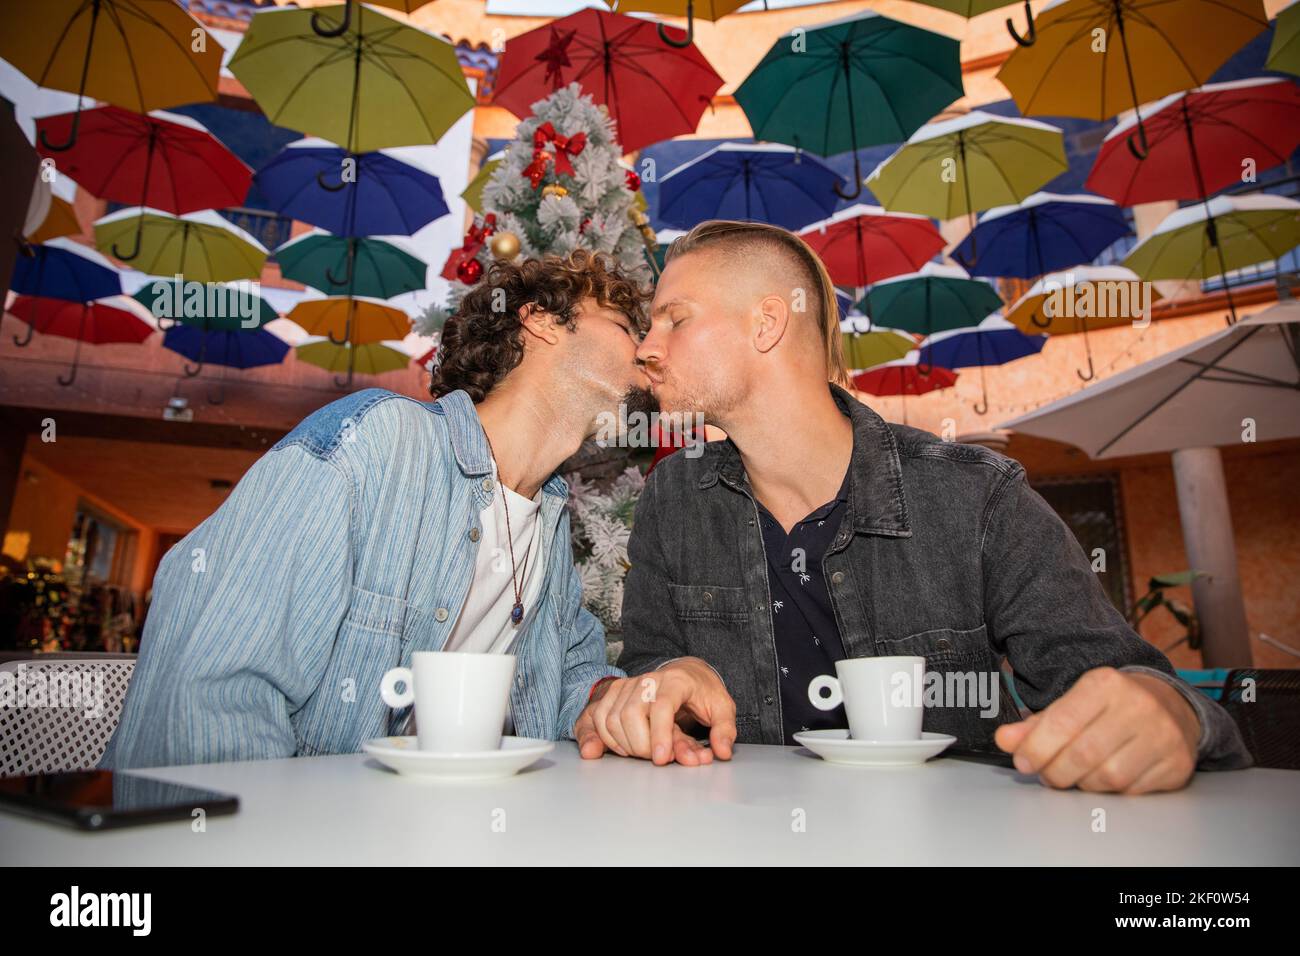 Das homosexuelle Paar trinkt während der Weihnachtsfeiertage in einem Café Kaffee. Stockfoto